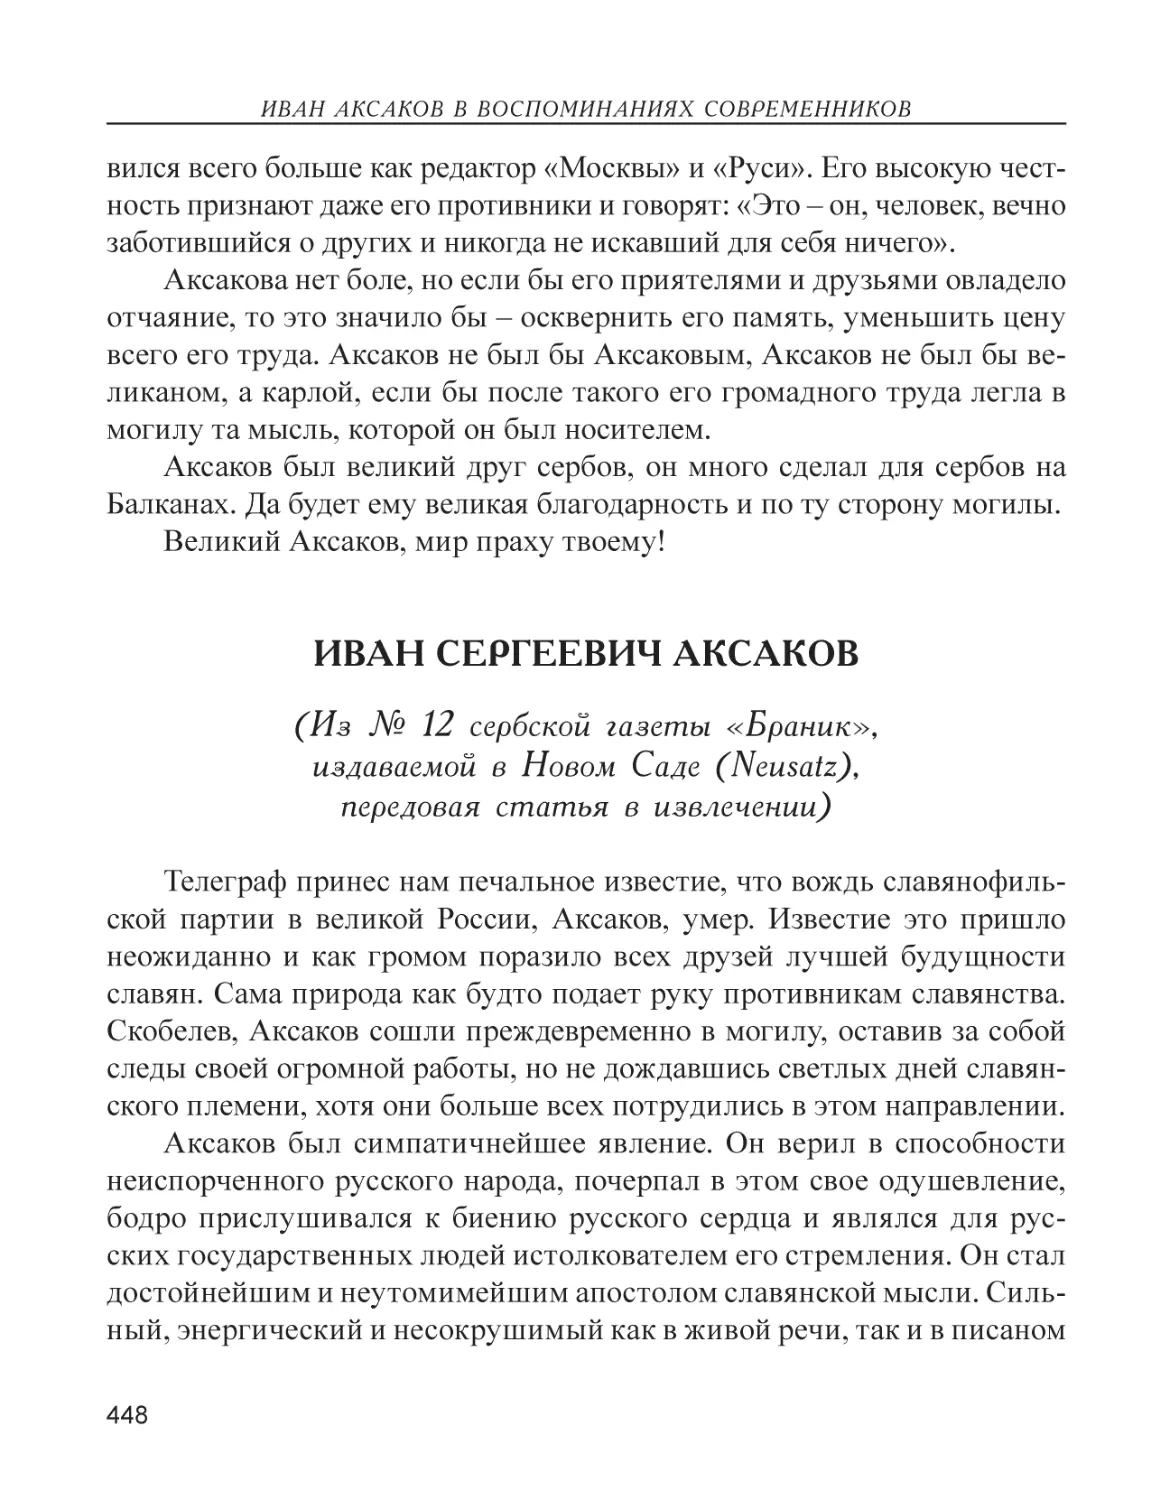 Иван Сергеевич Аксаков (Из № 12 сербской газеты «Браник», издаваемой в Новом Саде (Neusatz), передовая стататья в извлечении)